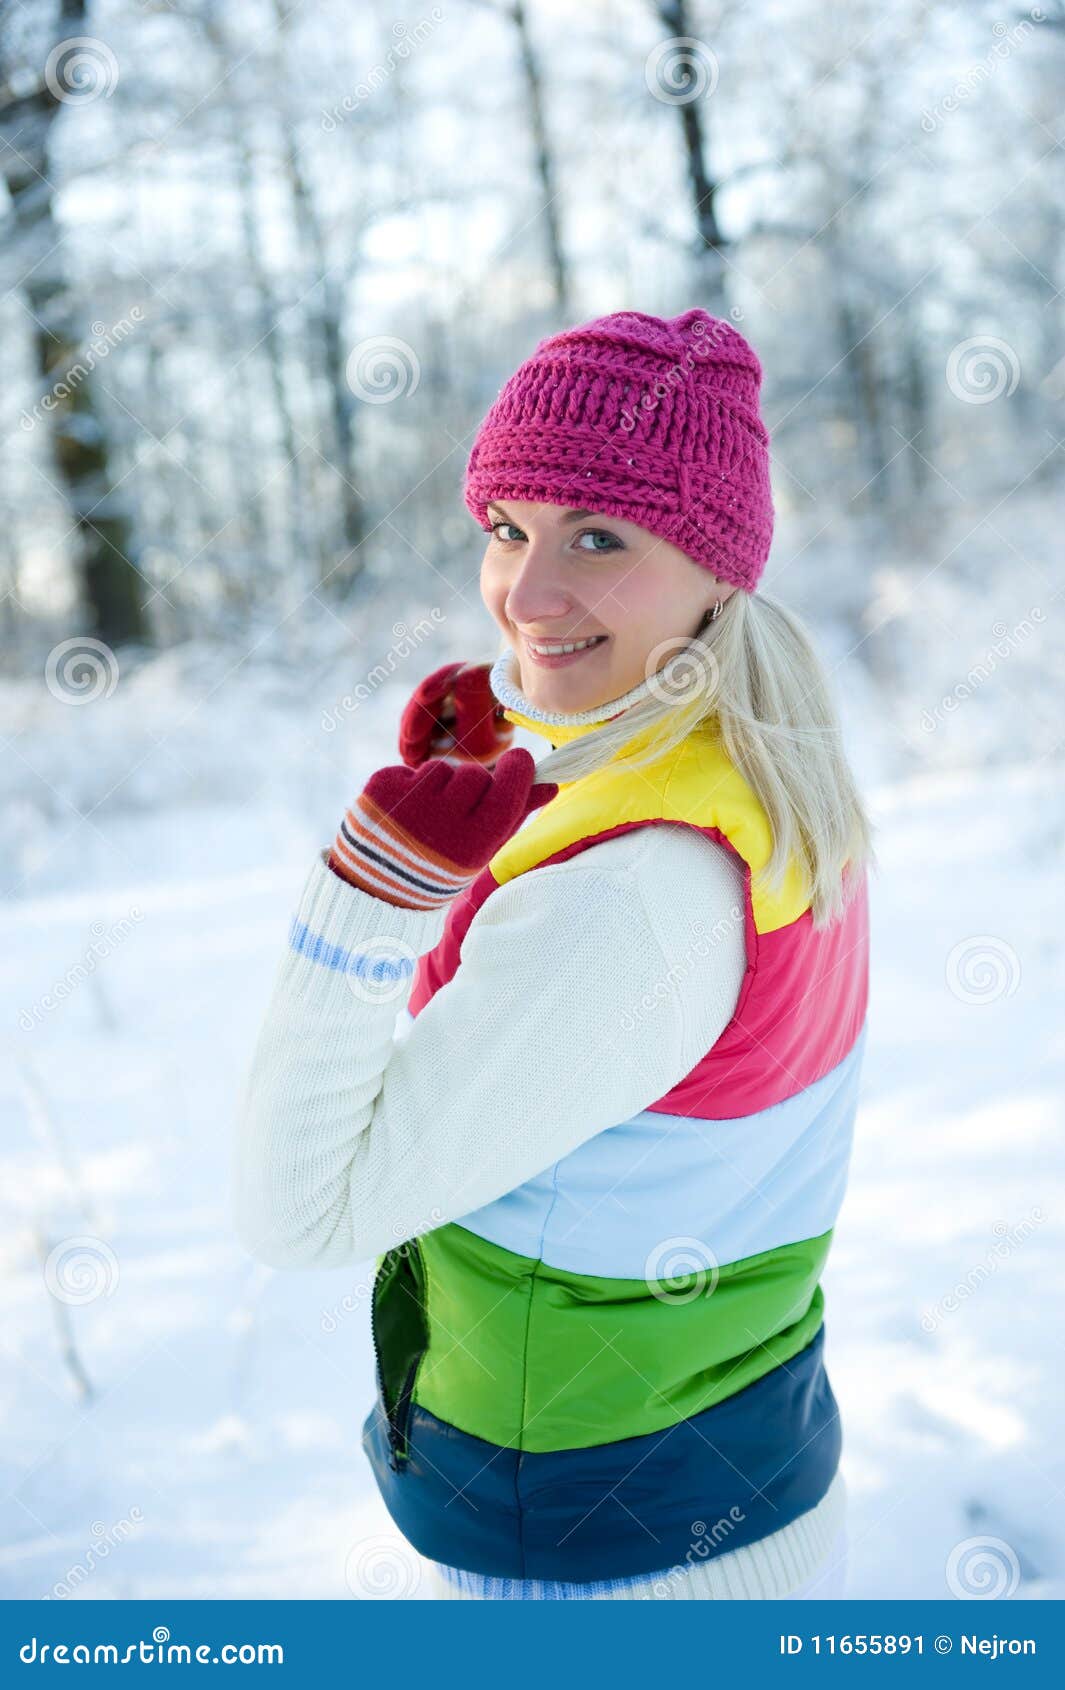 Frozen Beautiful Woman Stock Image - Image: 11655891